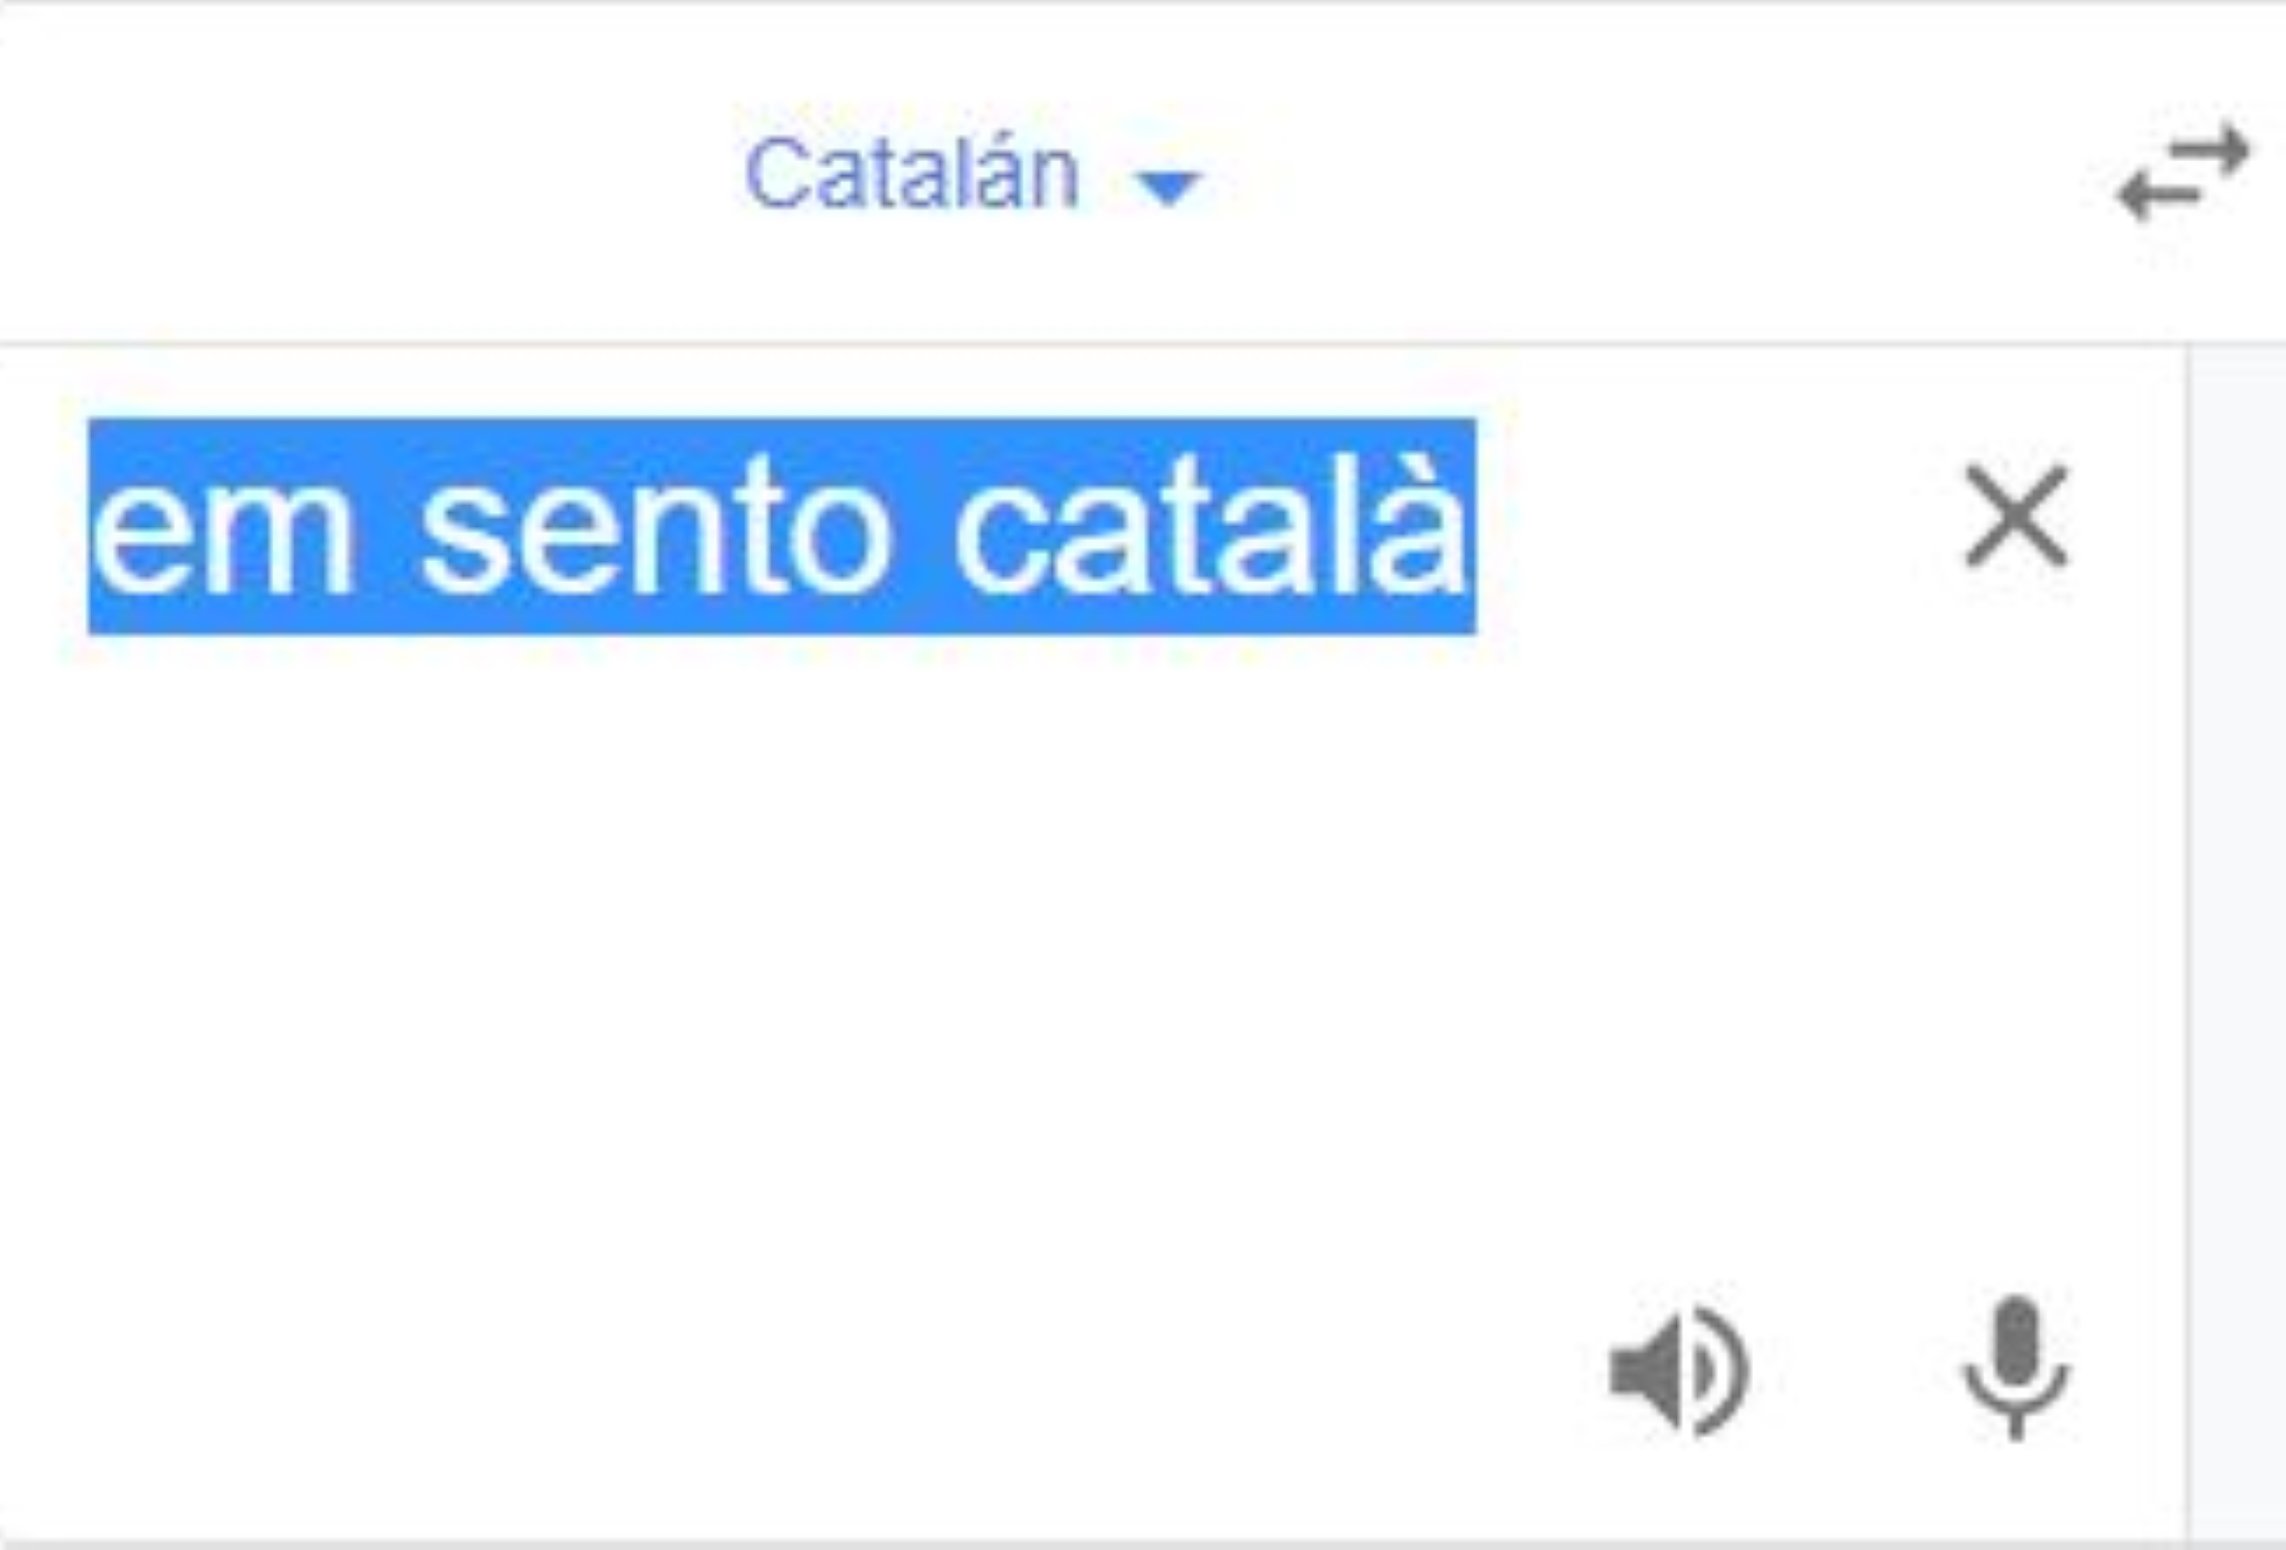 Catalanofobia en el traductor de Google: ¿qué responde a me siento catalán ?